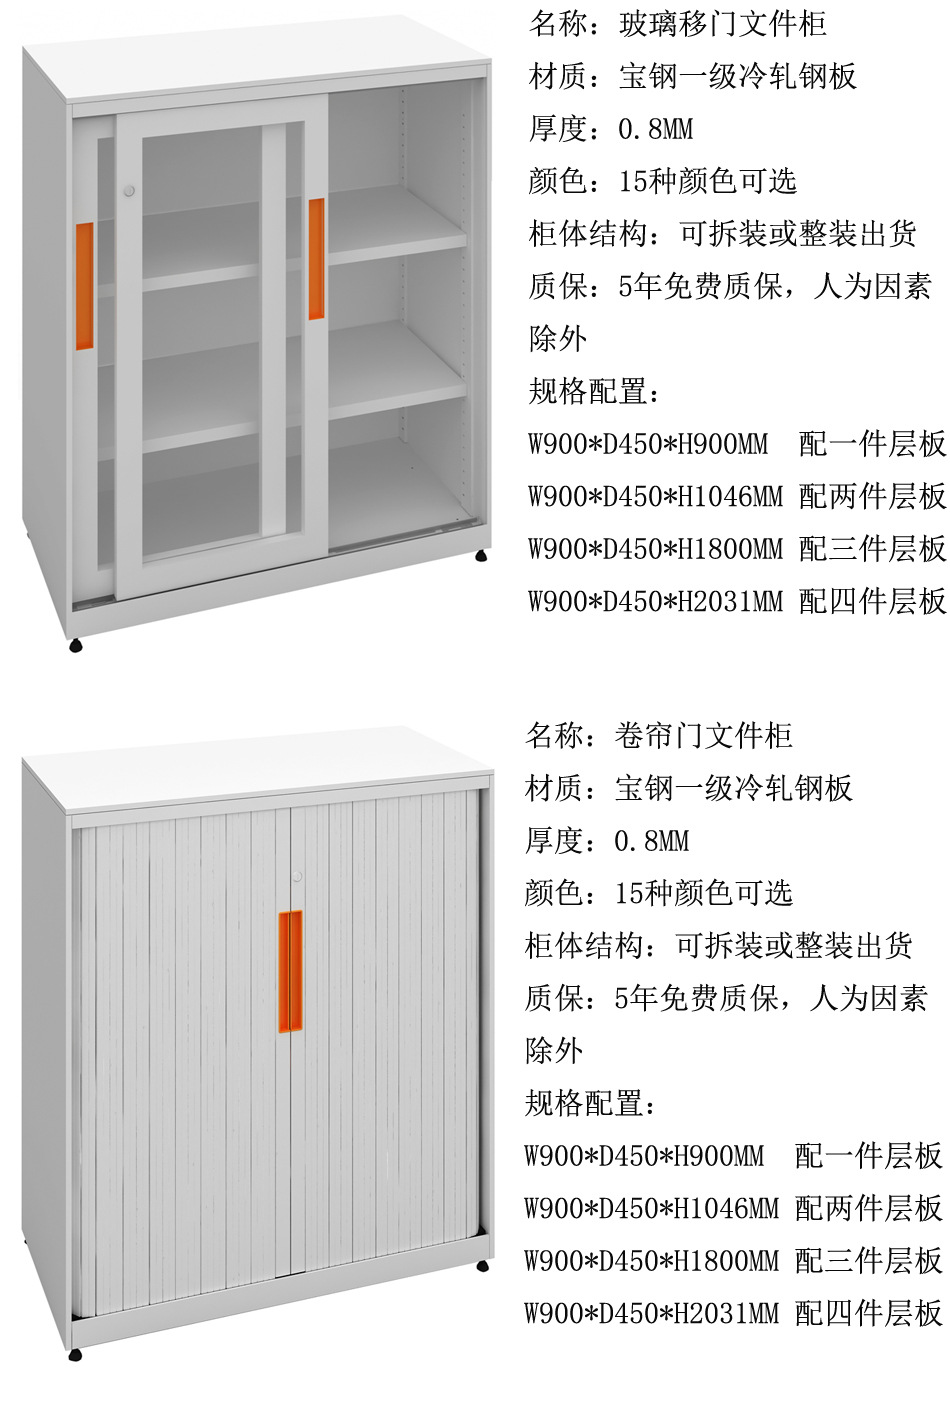 厂家直销WEBBER抽屉柜 钢制中式活动文件柜示例图2